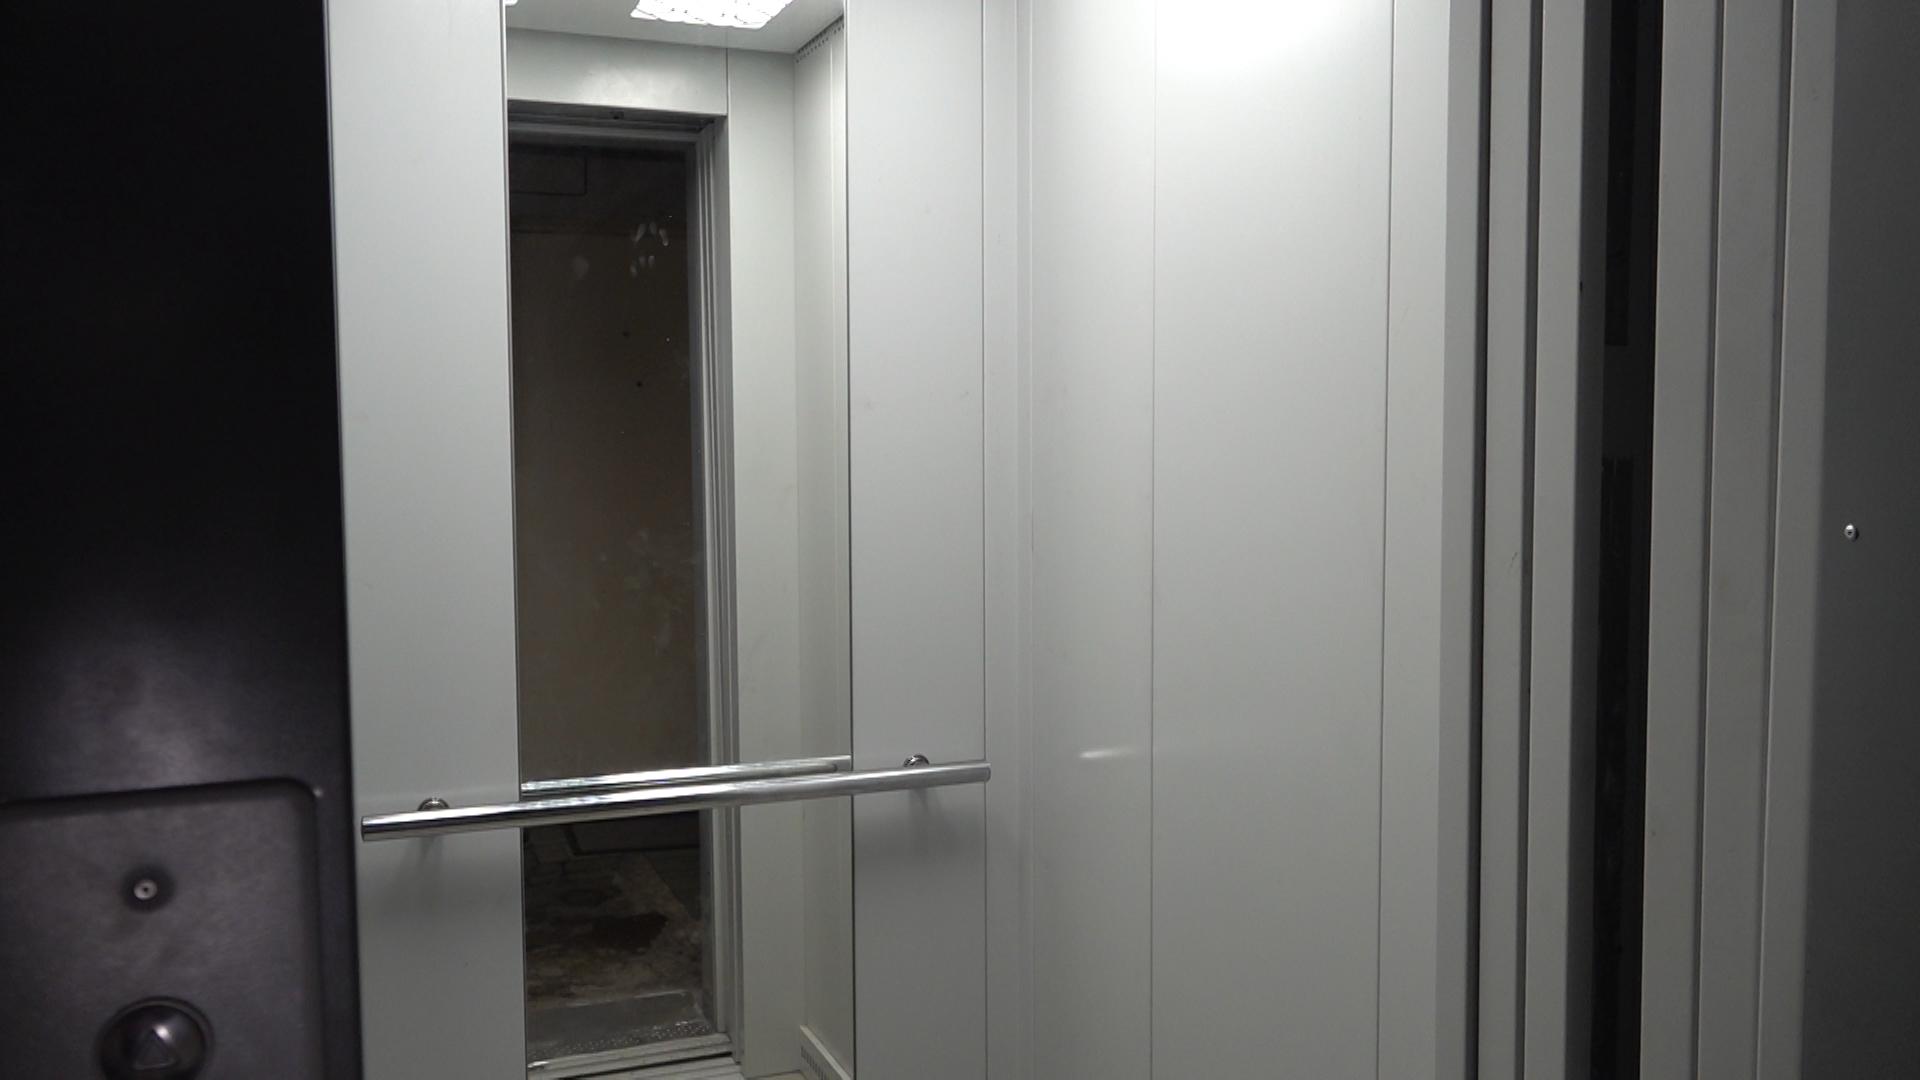 Երևանը փոխում է վերելակները, վերելակները՝ մարդկանց կյանքը